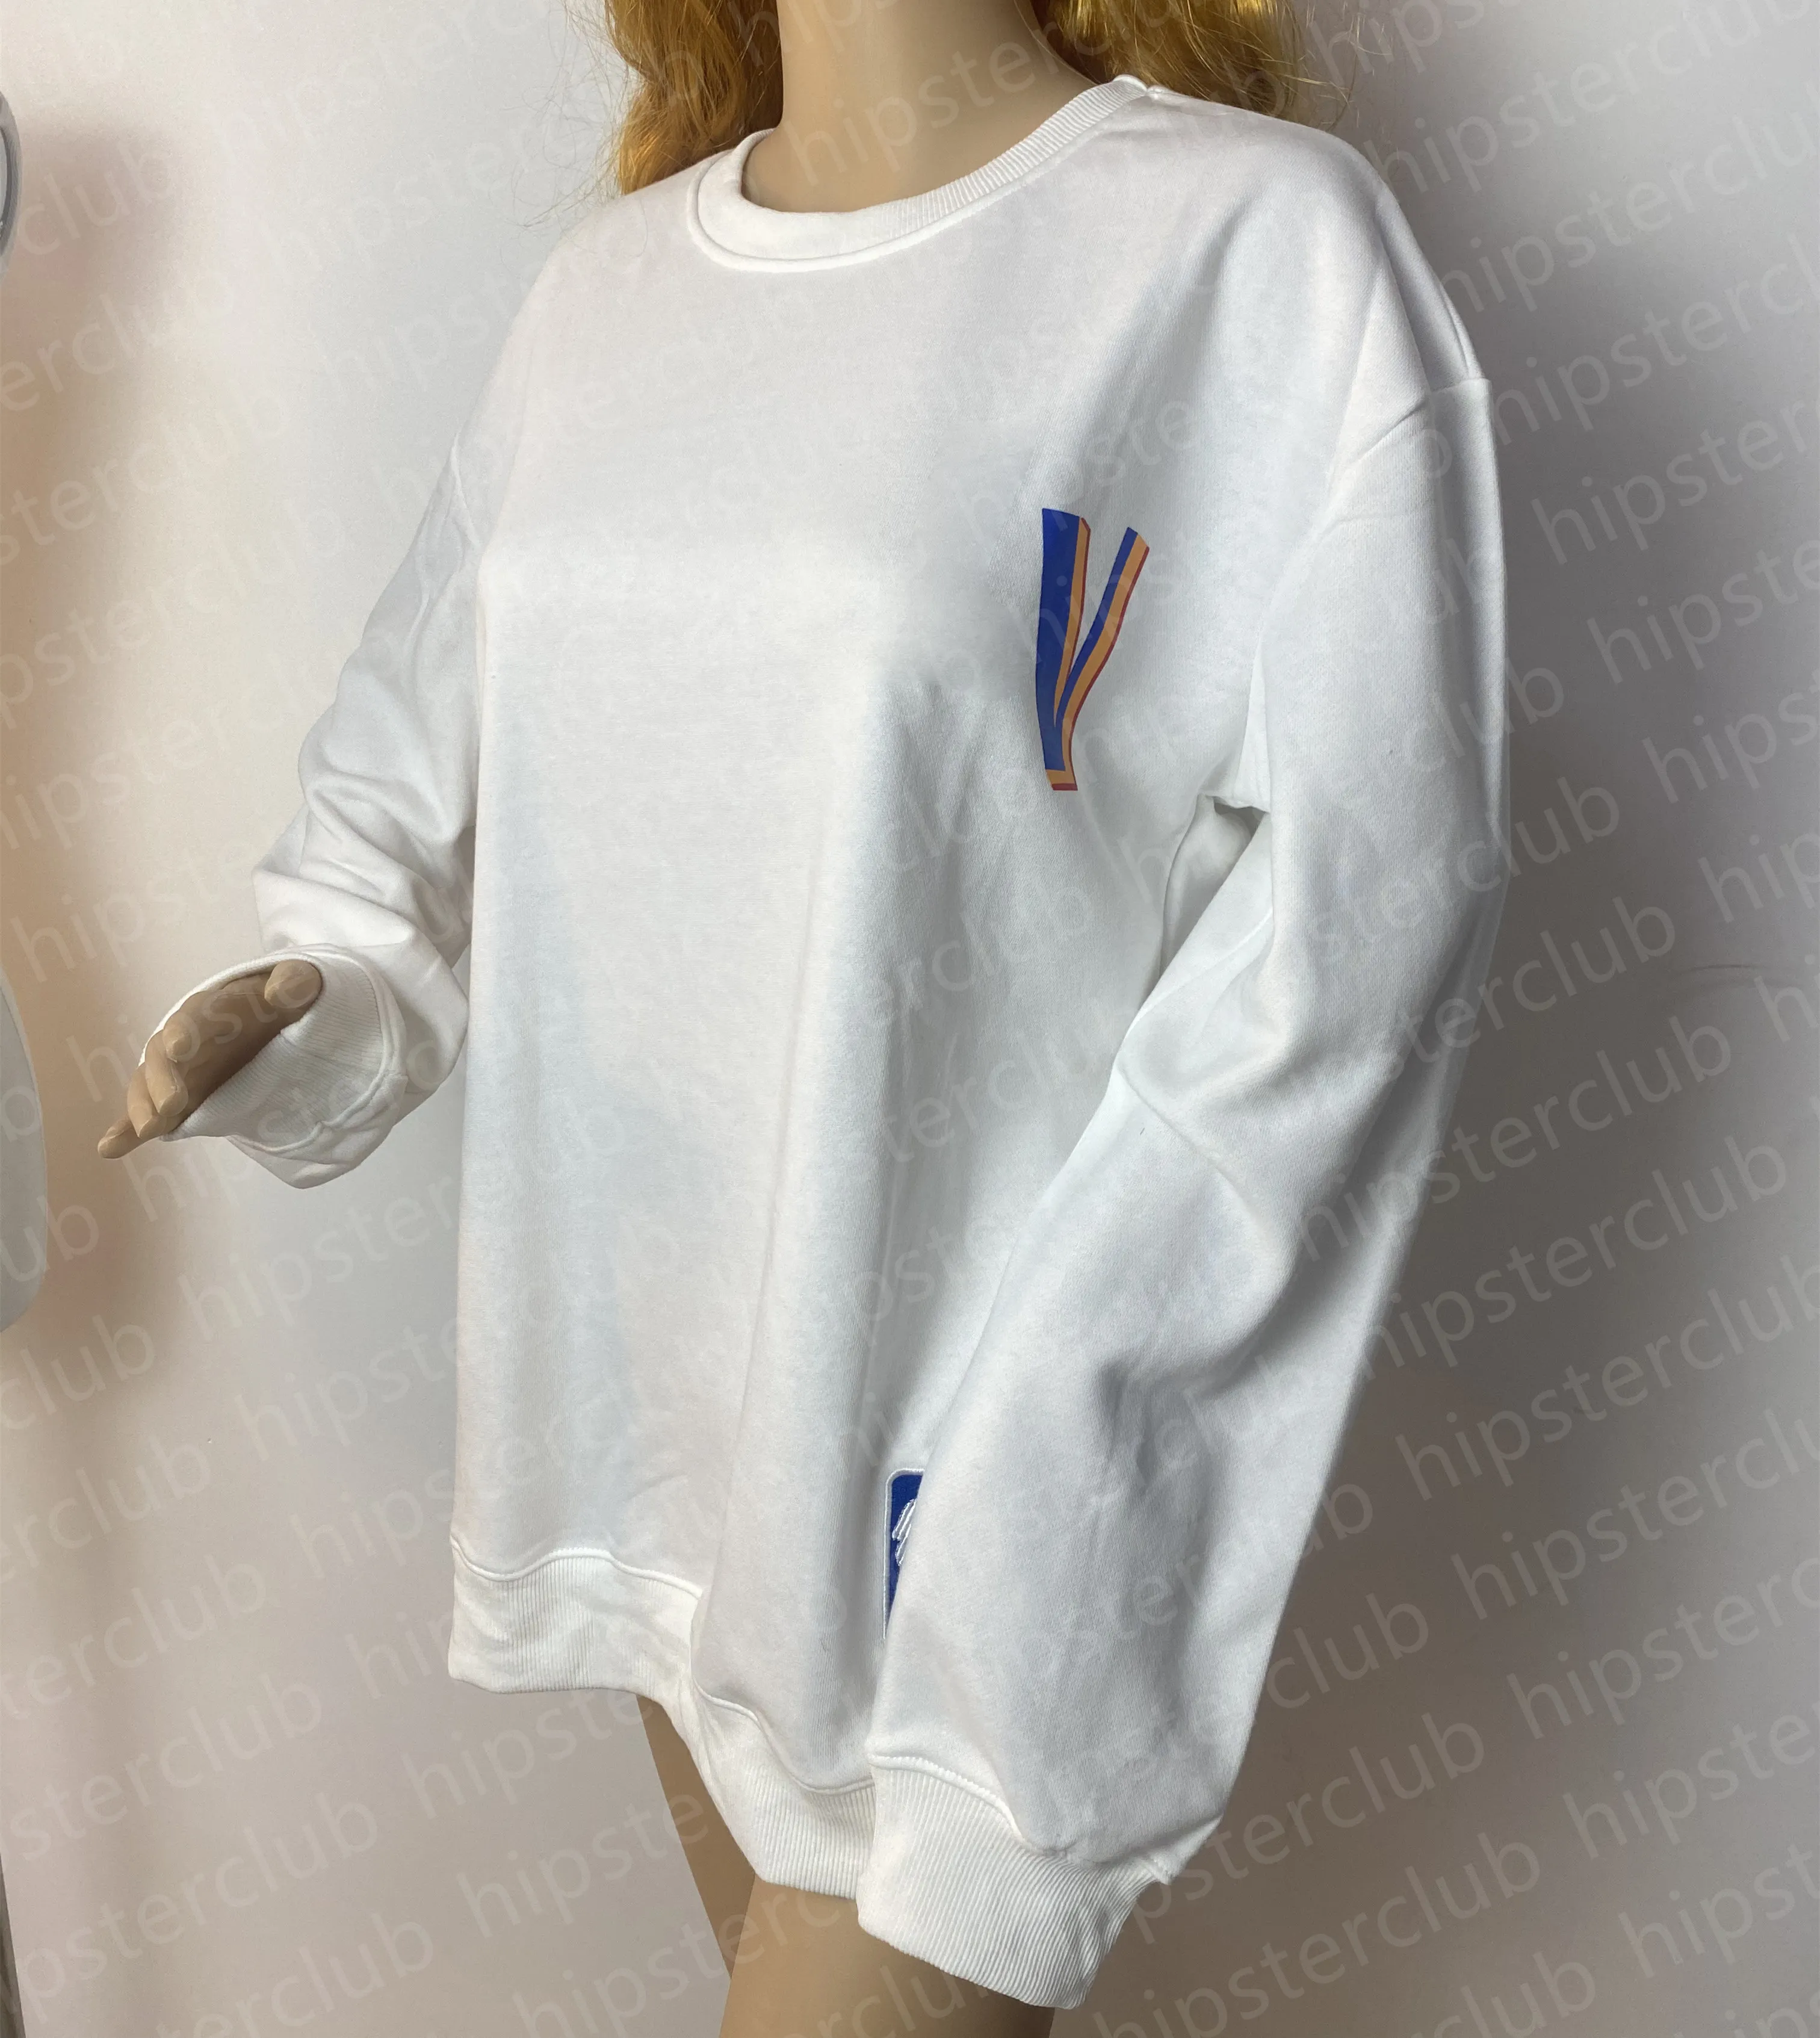 스웨트 셔츠 프린트 Landv Joint Basketball Club 도매 남성 패션 스웨트 셔츠 여성 캐주얼 홈 여행 땀 귀여운 후드 100%면 가을/겨울 스웨터